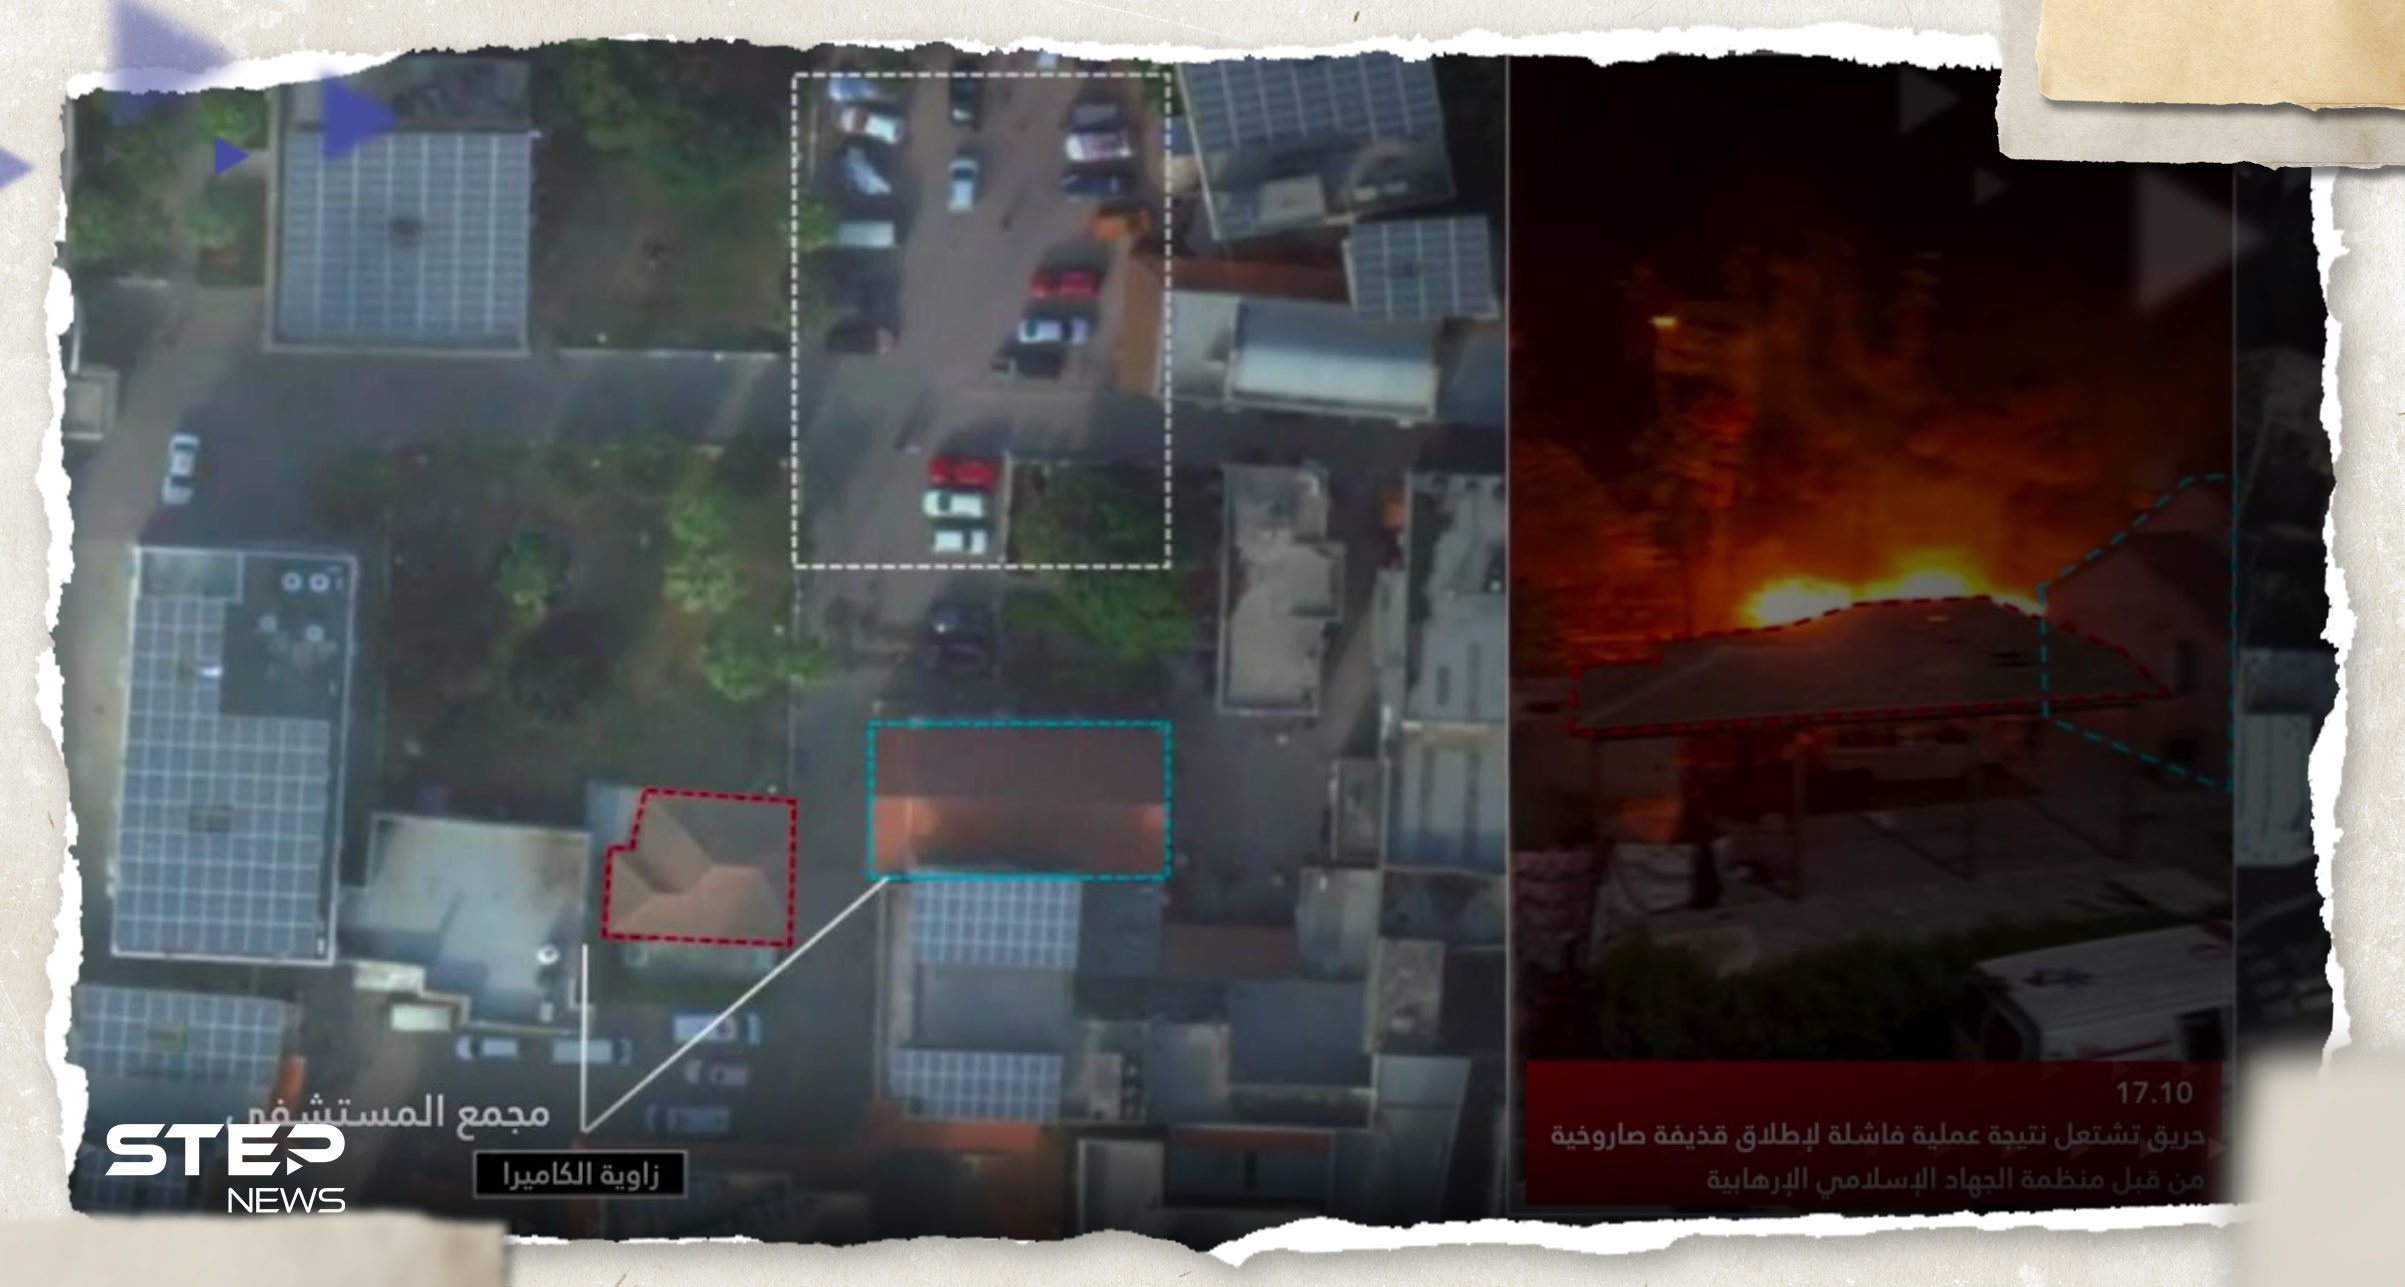 بالفيديو|| روسيا تطالب بنشر صور الأقمار الصناعية لكشف من قصف مستشفى المعمداني وإسرائيل تستجيب 